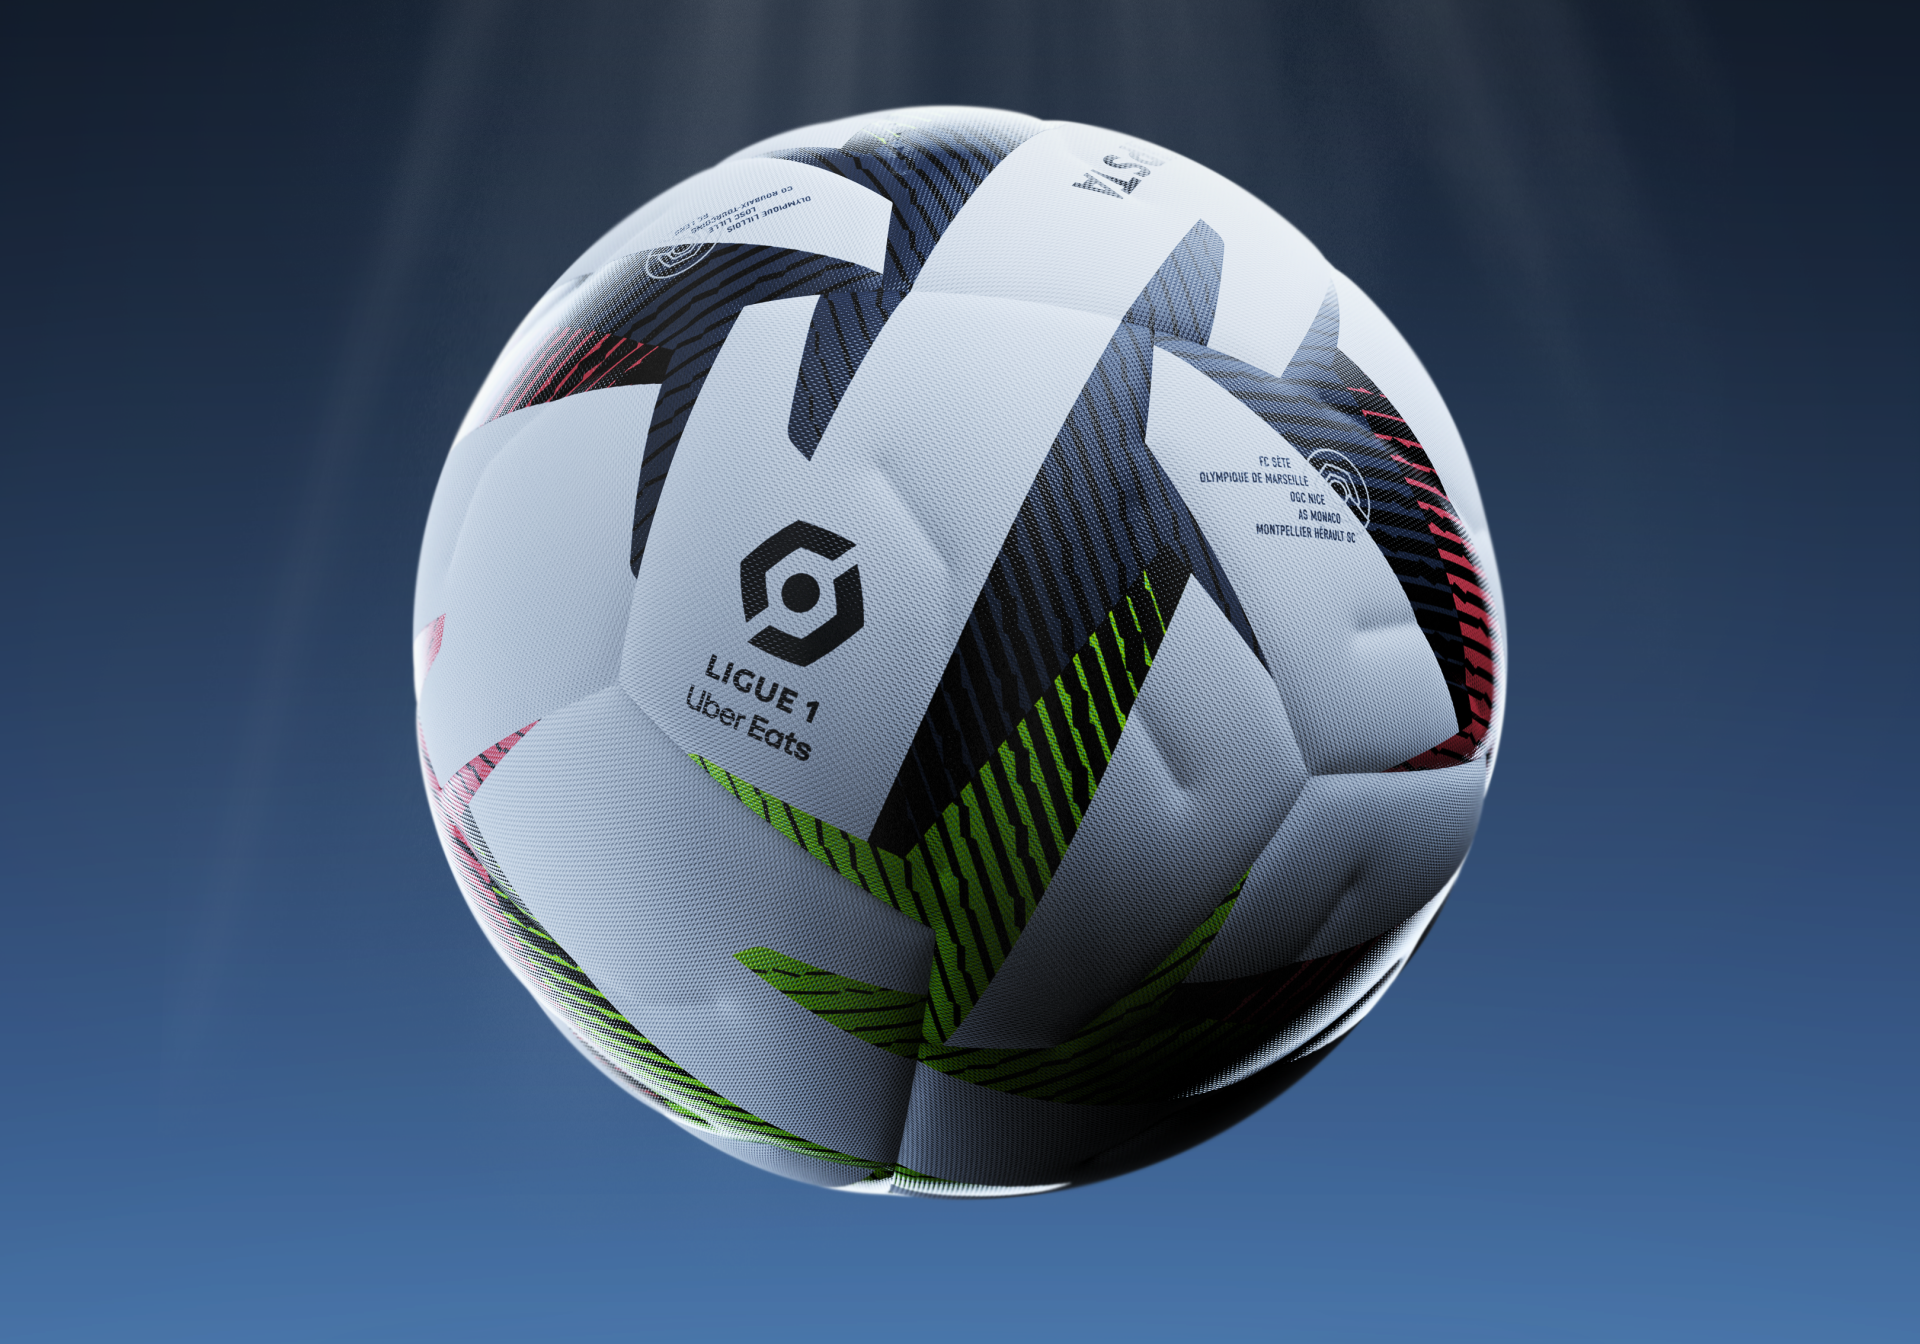 Premier League : le ballon de la saison 2023-2024 dévoilé par Nike